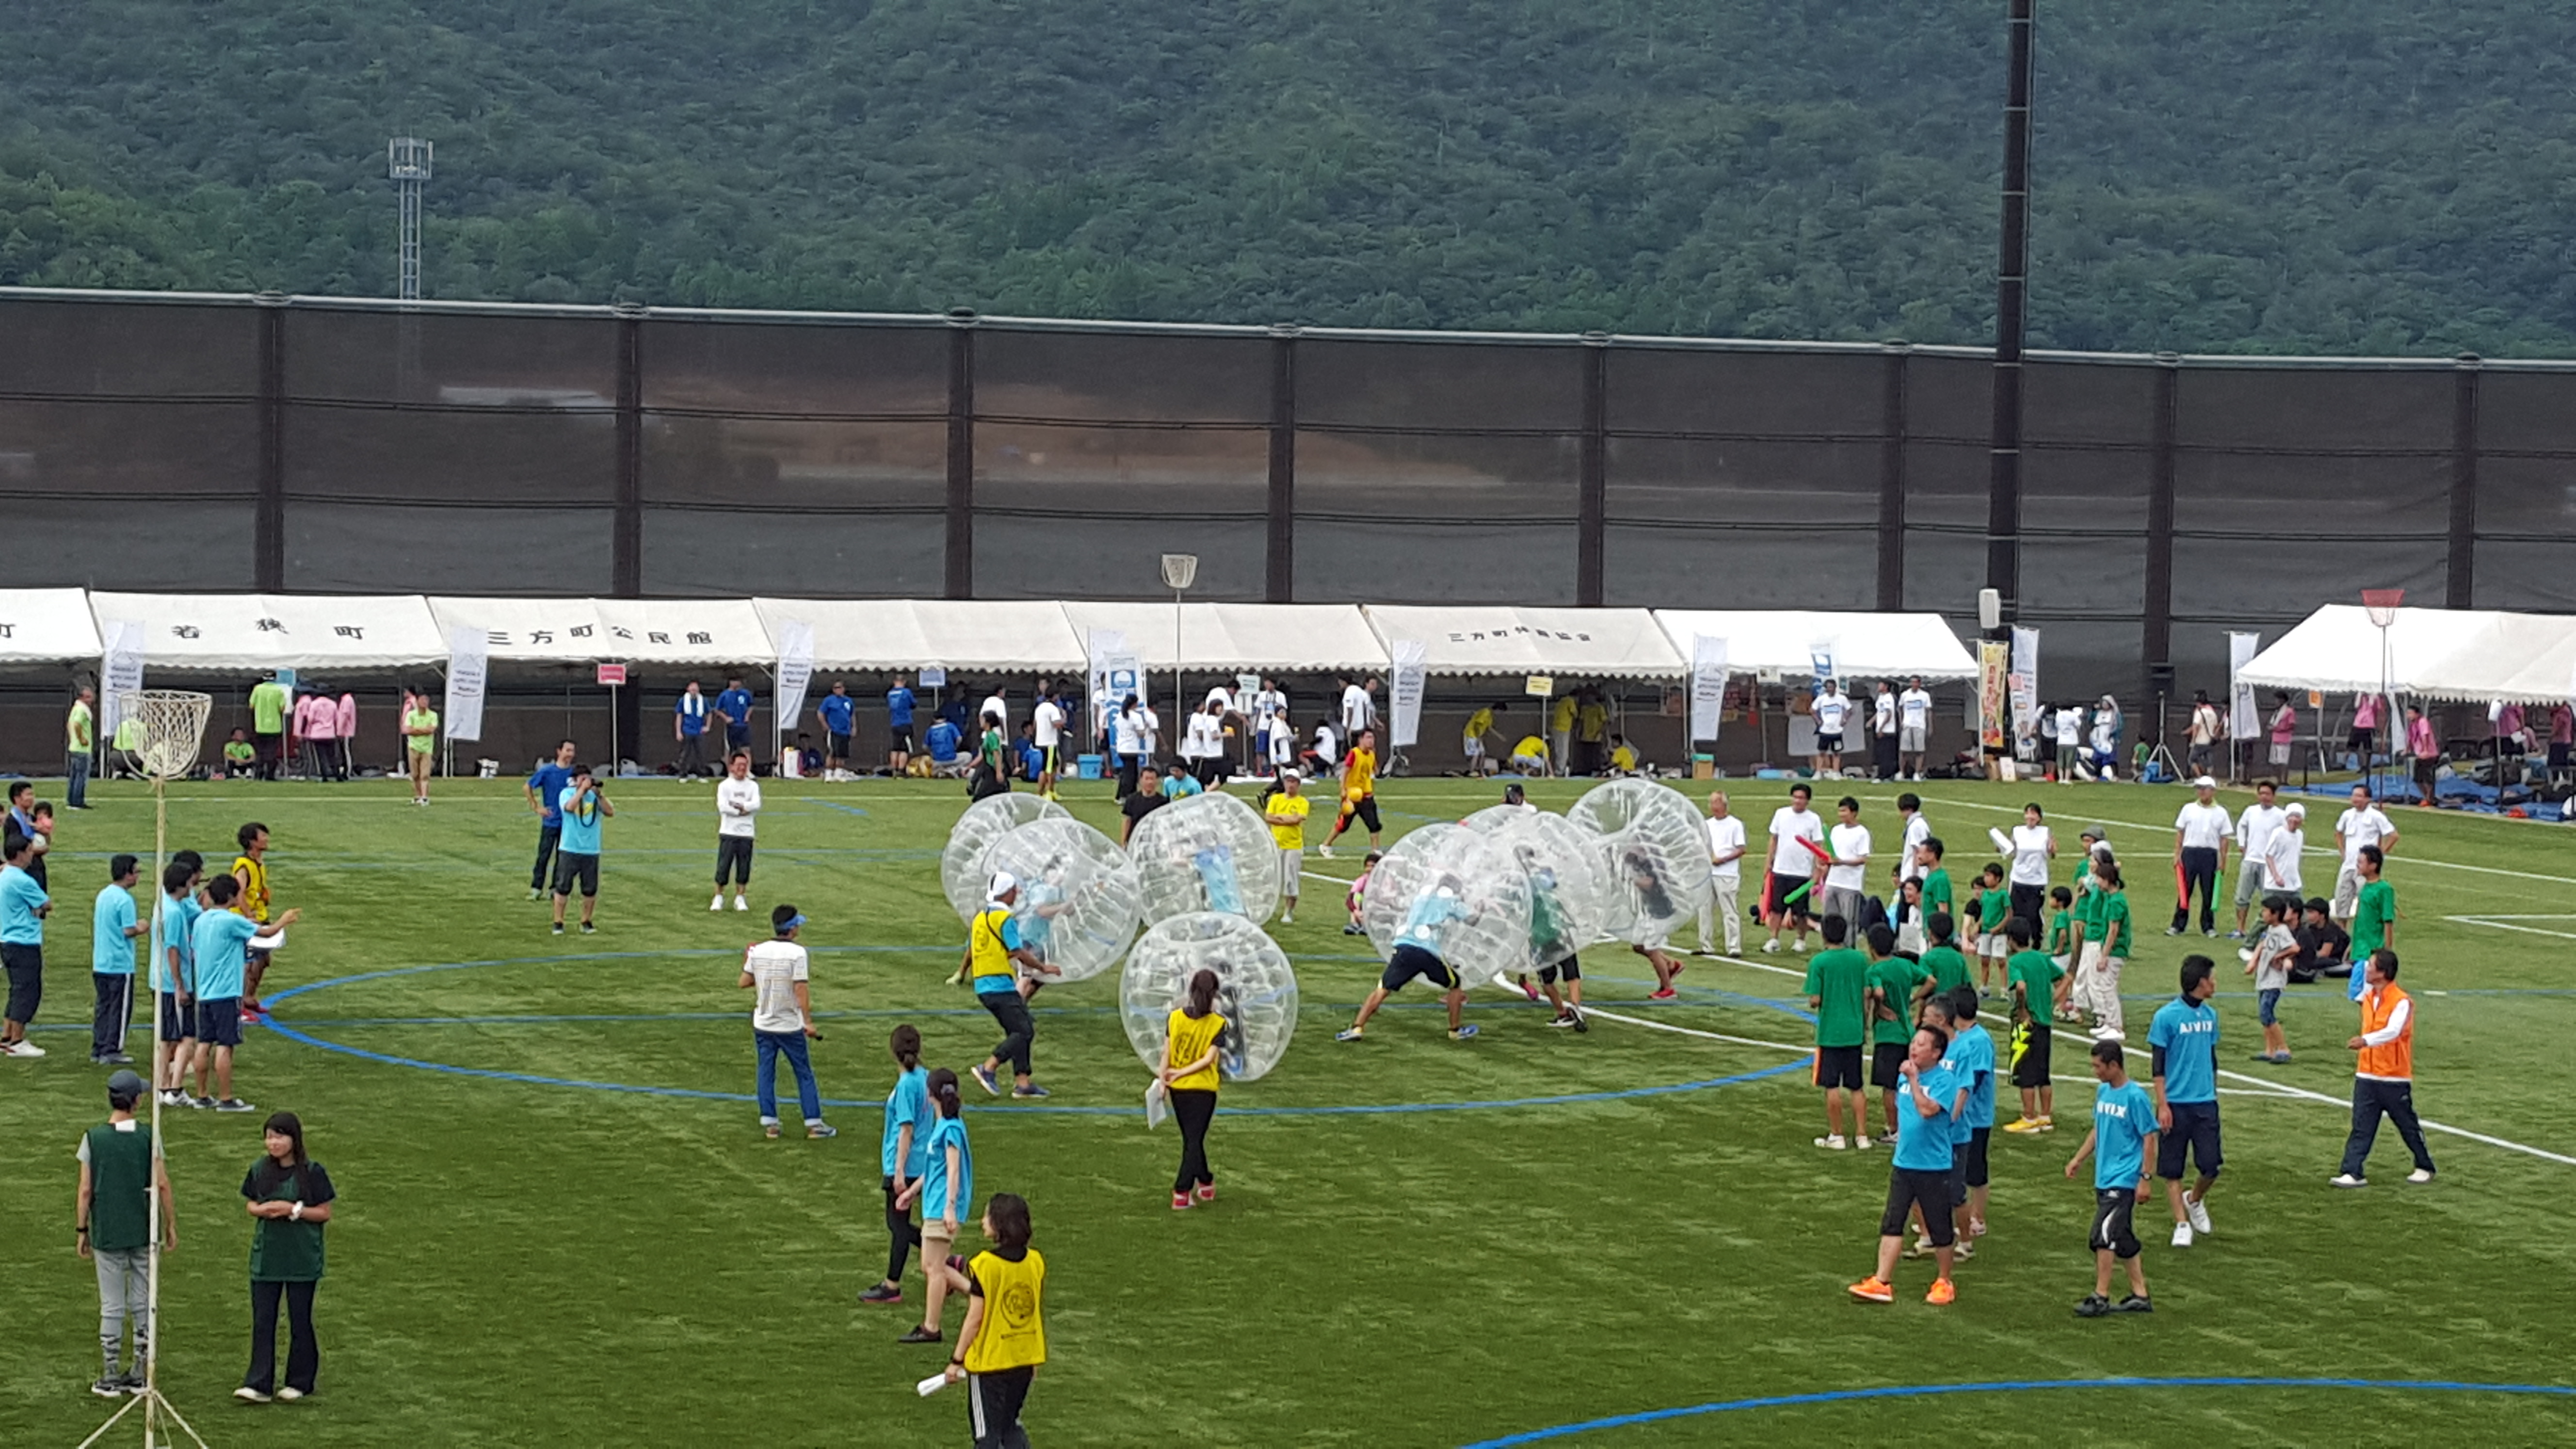 特徴 バブルサッカーはイベントのアクセントにも最適 バブルボール エア遊具 運動会のレンタル プラスピート